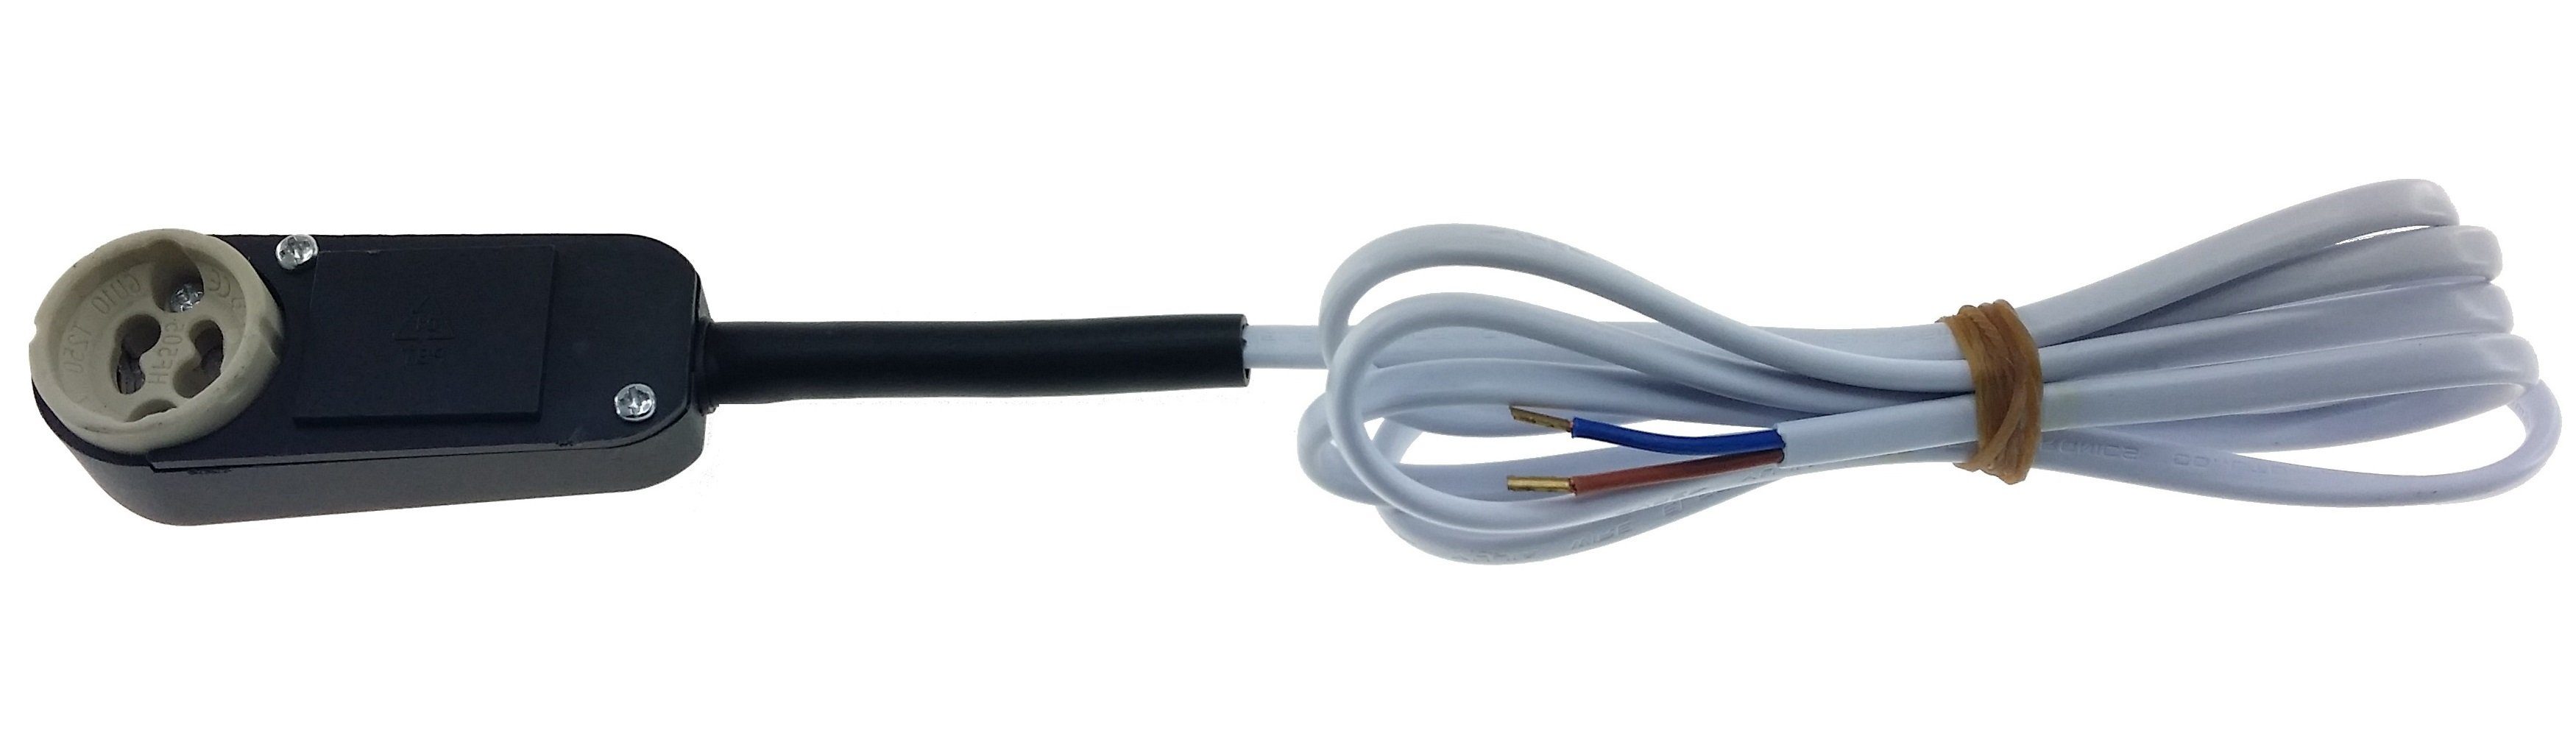 PVC Kabel - inkl. Pack Einbauleuchte, Halogen, Strahler - Einbaustrahler Sockel 2x0,75mm² Einbauleuchte – - Fassung weißes LED für 100cm Anschlusskasten TRANGO oder - GU10AK-1M Sicherheit-Lampenfassung GU10 1er